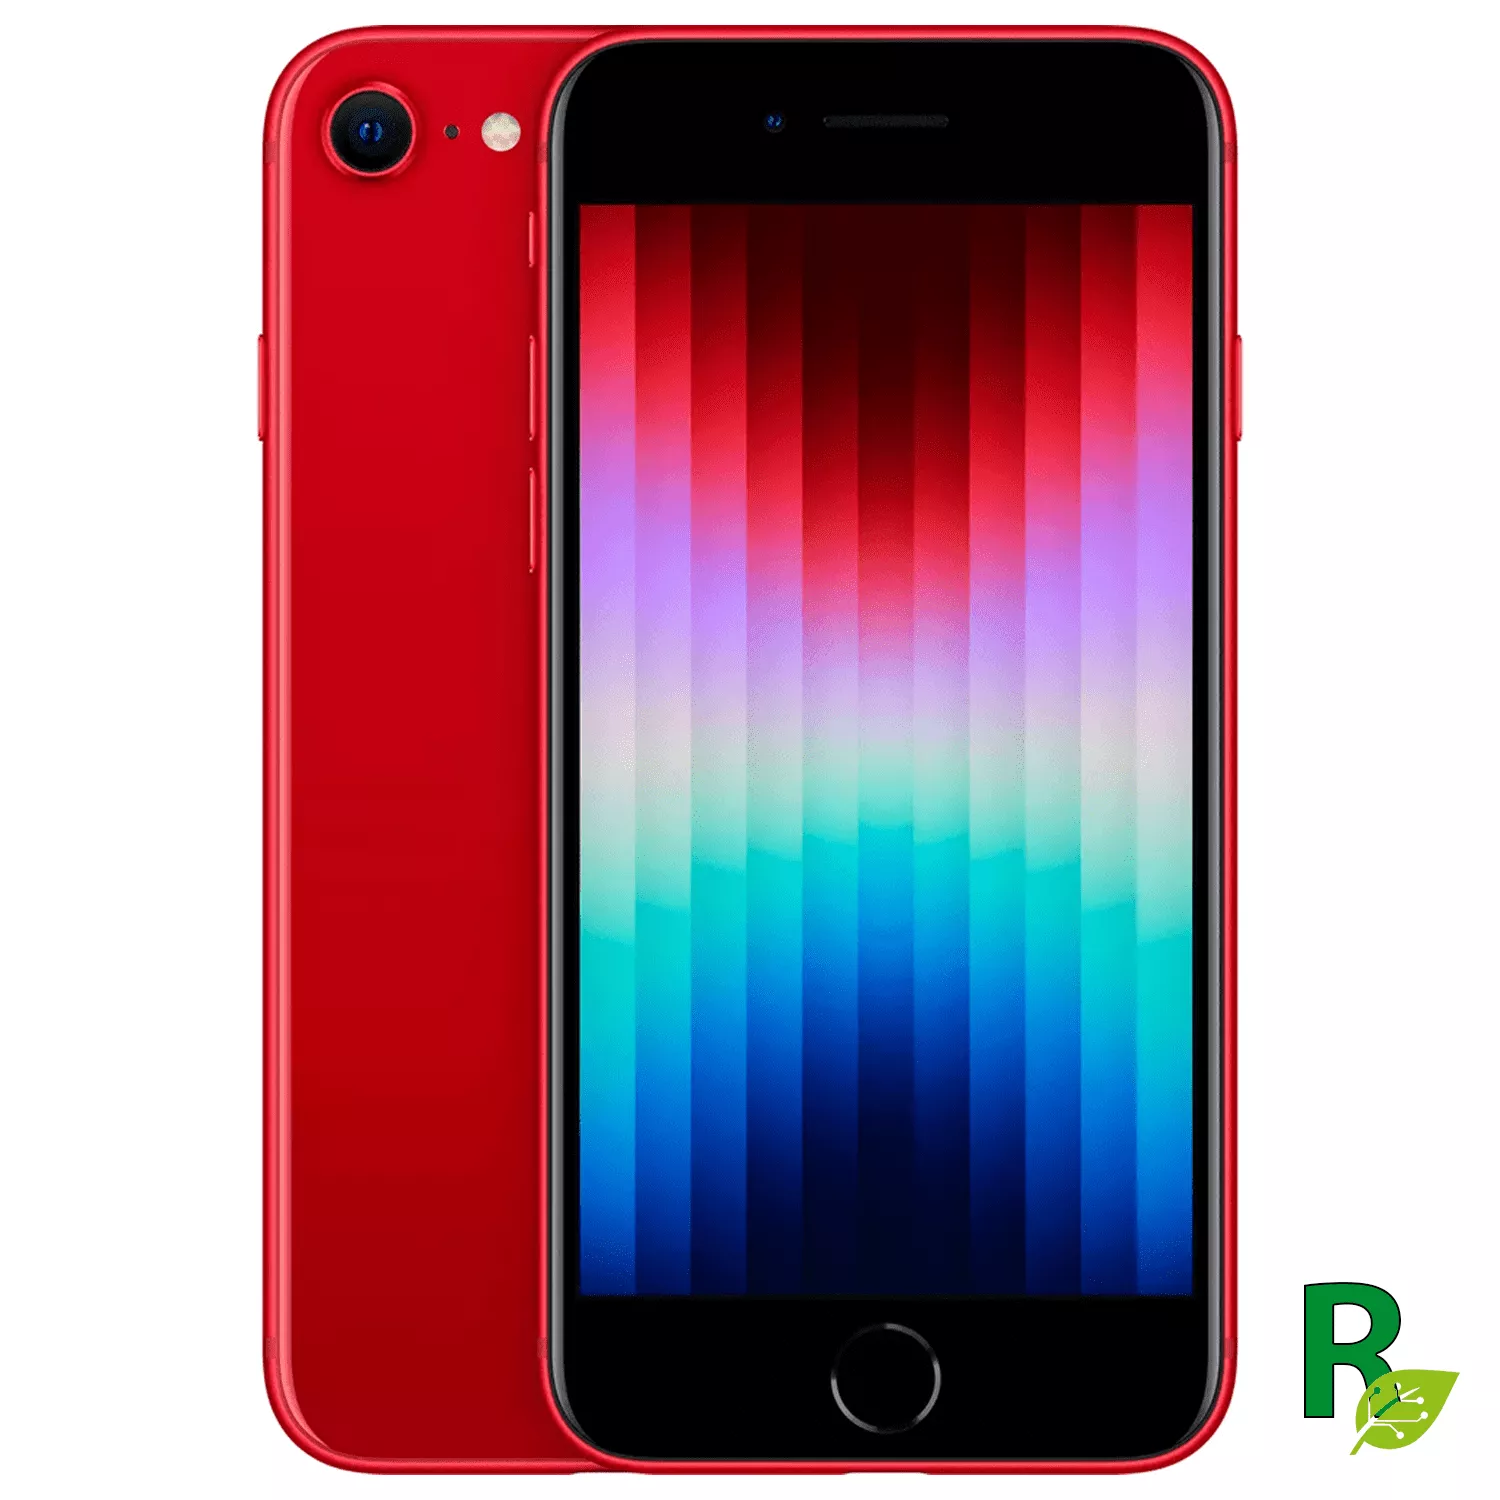 iPhone SE 64GB - Red - Se2Red64AB - Cat. AB-Reacondicionado